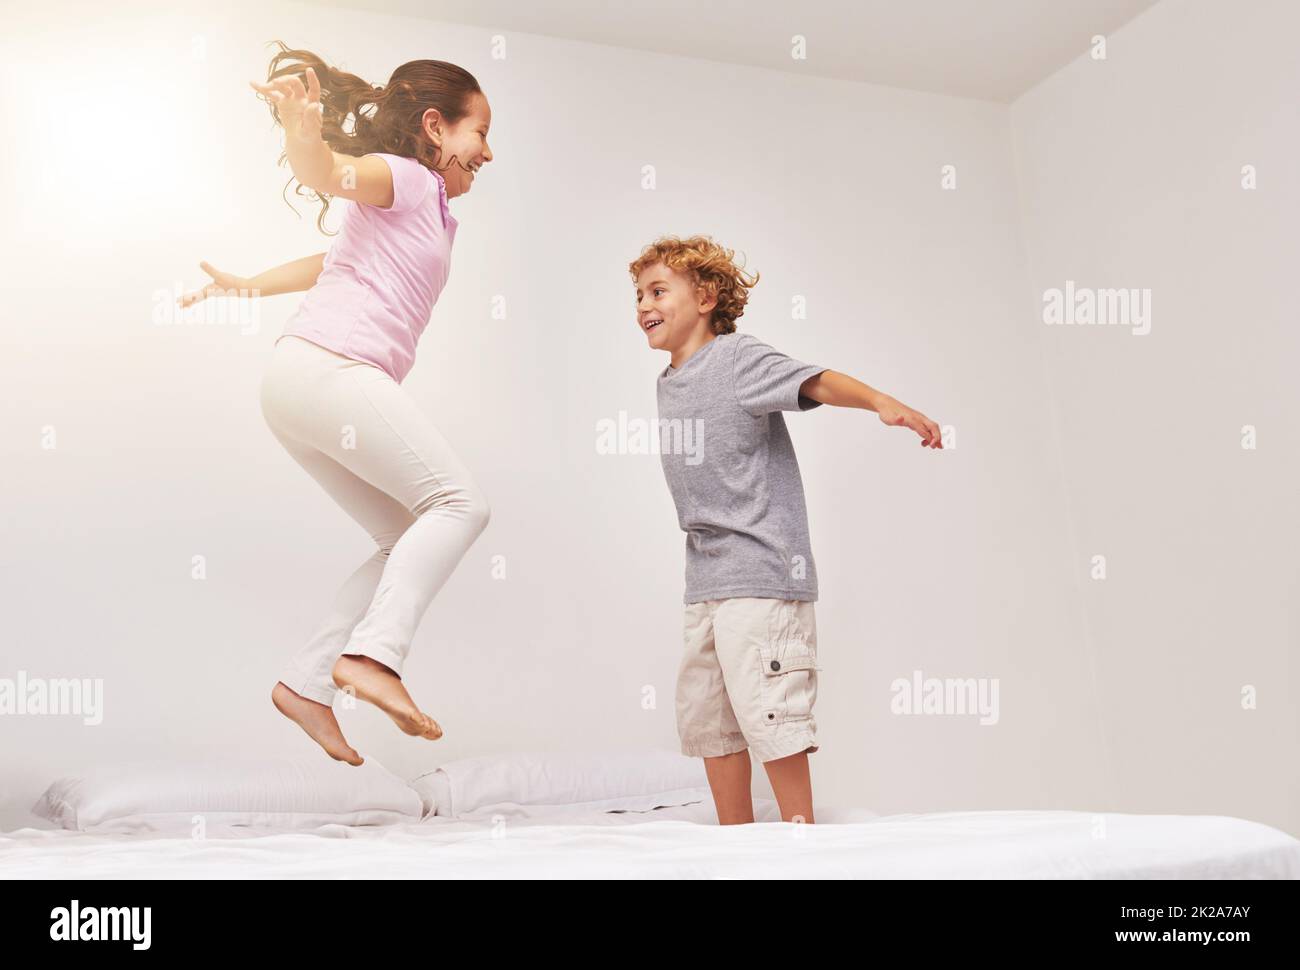 Wie hoch kannst du gehen. Aufnahme von zwei kleinen Kindern, die auf einem Bett springen. Stockfoto